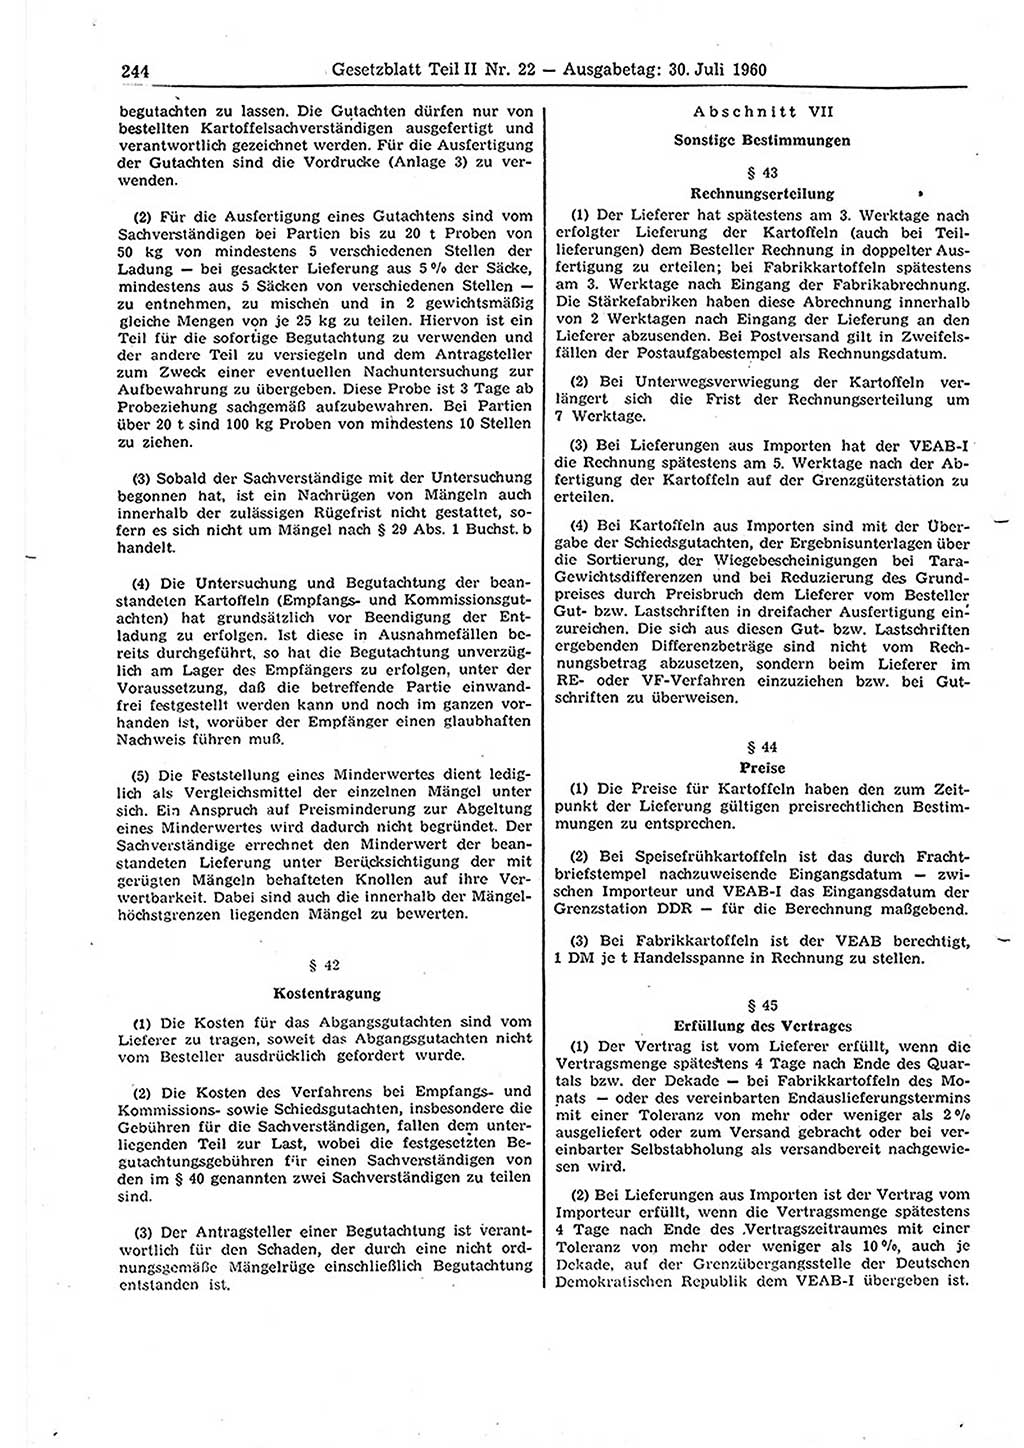 Gesetzblatt (GBl.) der Deutschen Demokratischen Republik (DDR) Teil ⅠⅠ 1960, Seite 244 (GBl. DDR ⅠⅠ 1960, S. 244)